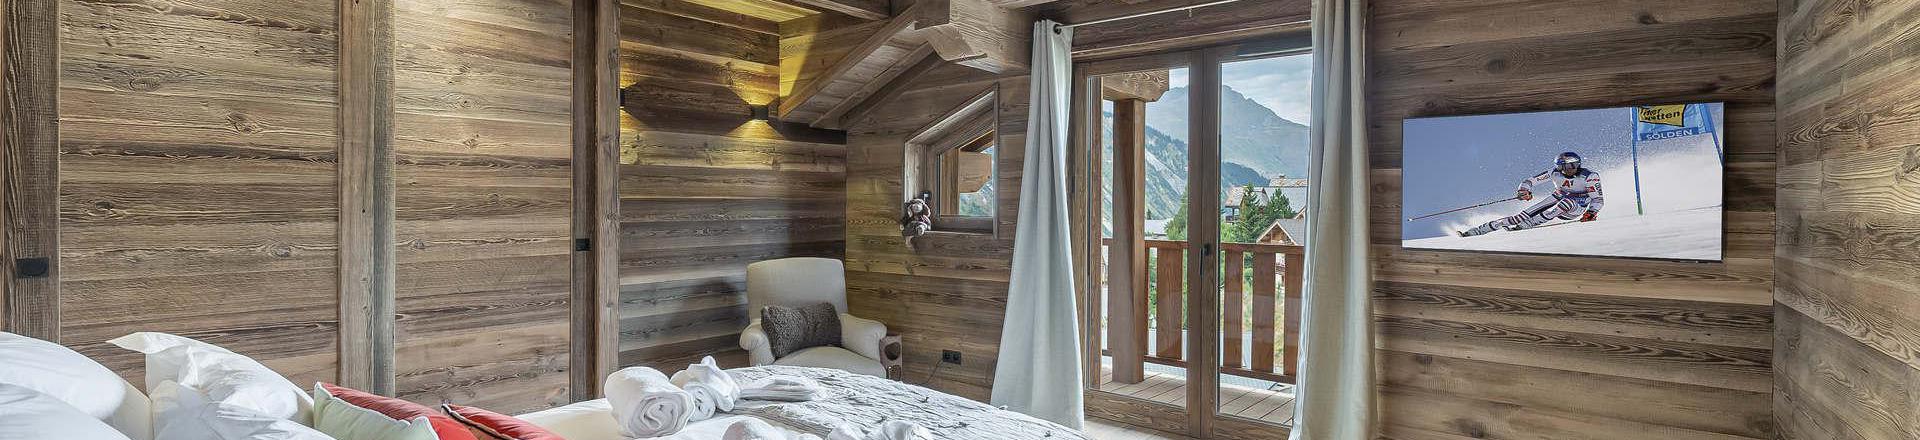 Rent in ski resort 6 room chalet 10 people - Chalet Coco Marcel - Saint Martin de Belleville - Bedroom